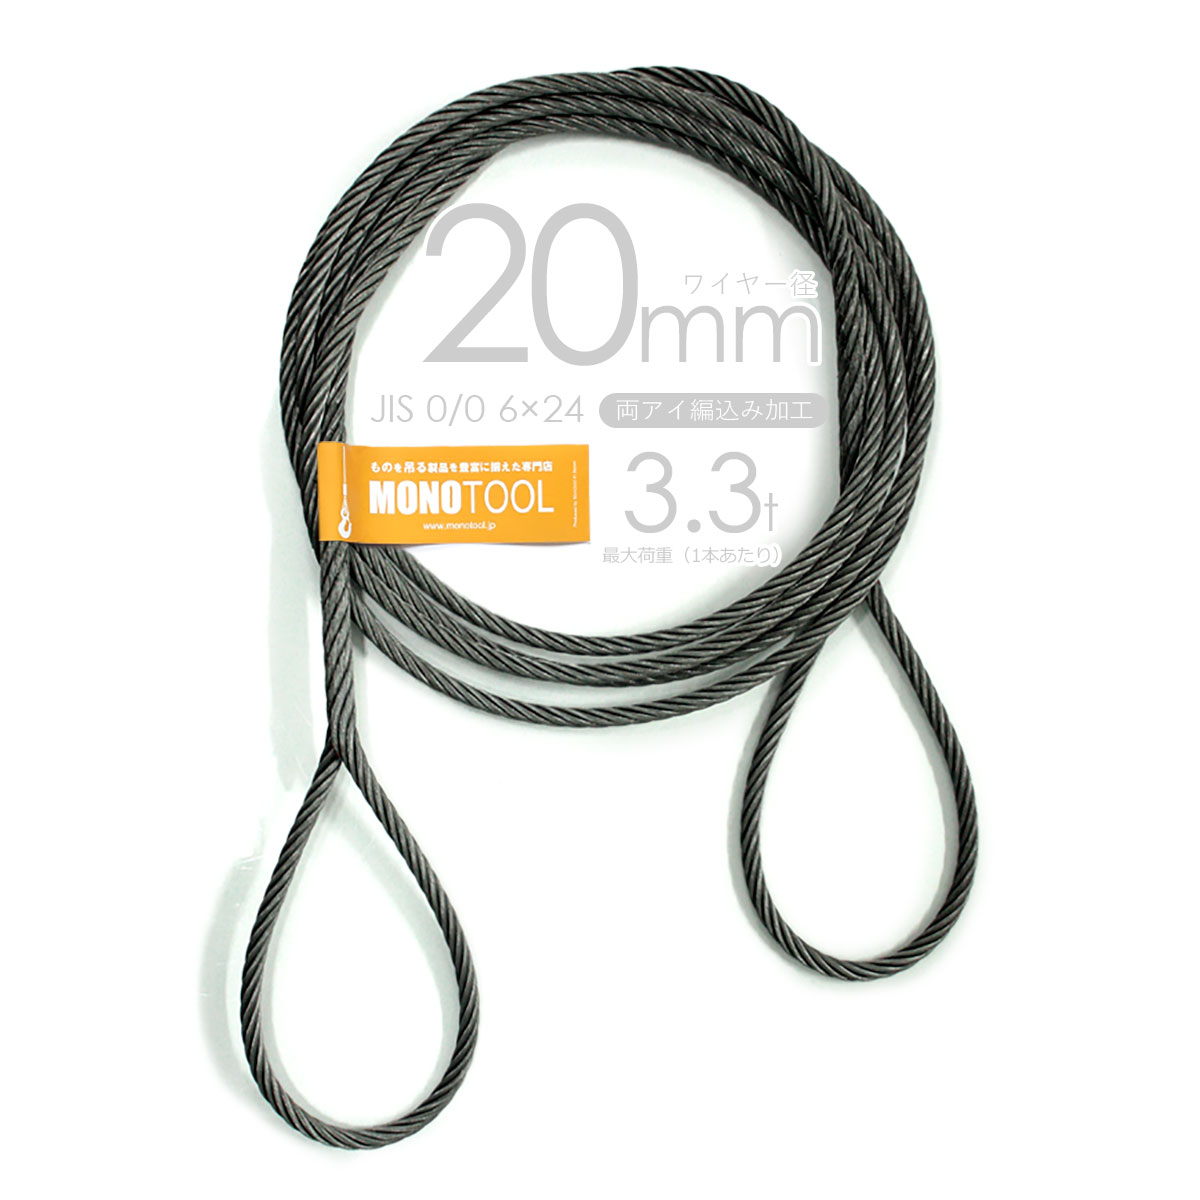 編み込み・フレミッシュ加工 JIS黒(O/O) 20mm(6.5分) 玉掛ワイヤロープ